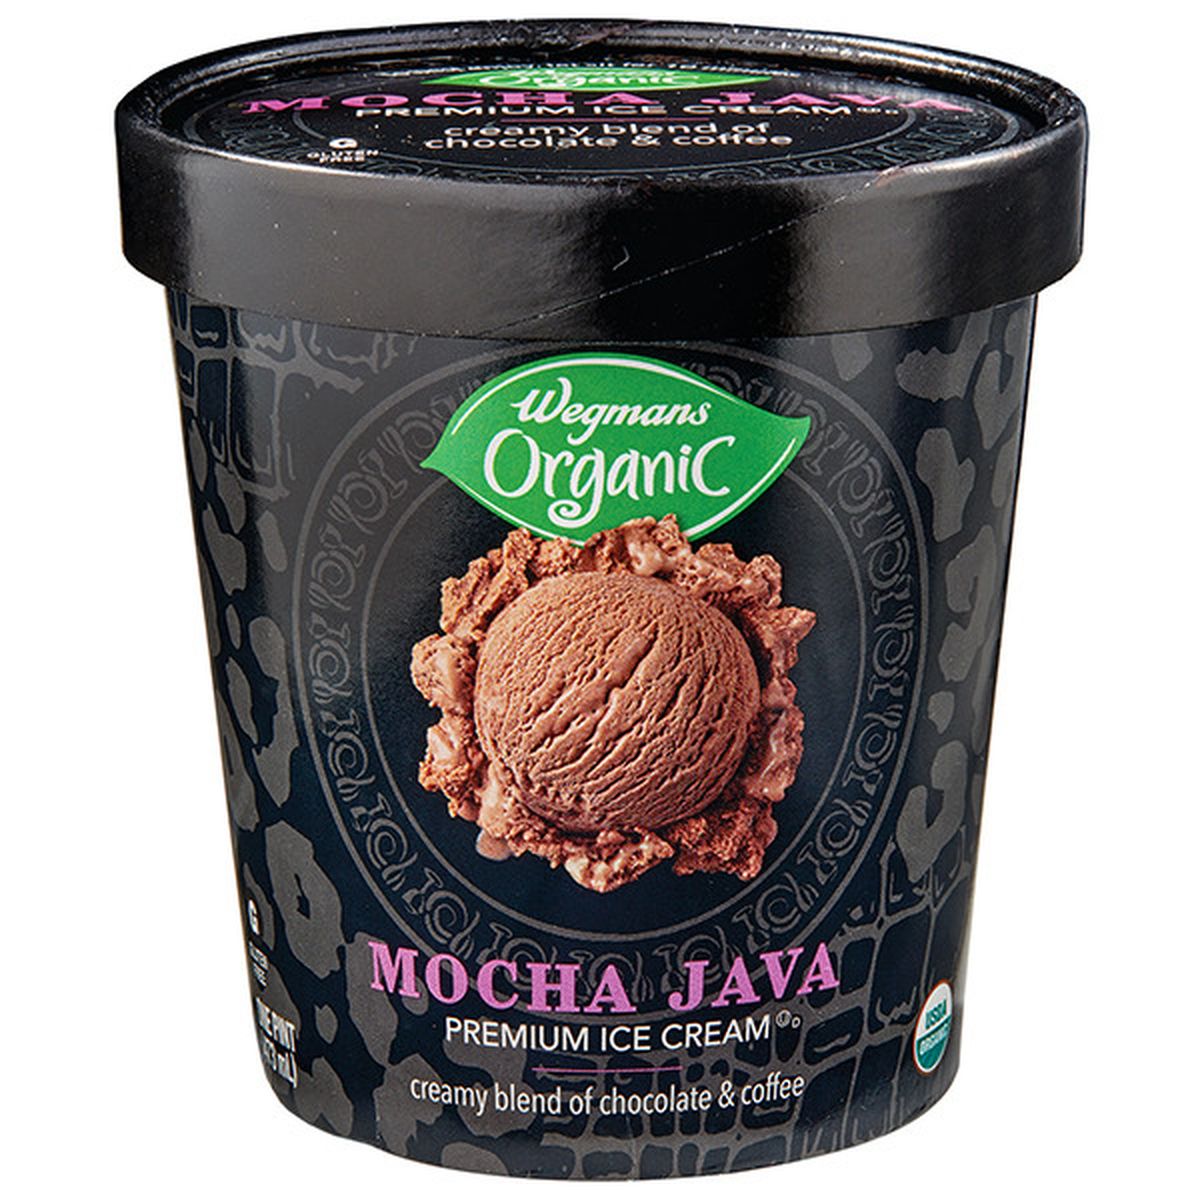 Calories in Wegmans Organic Mocha Java Premium Ice Cream